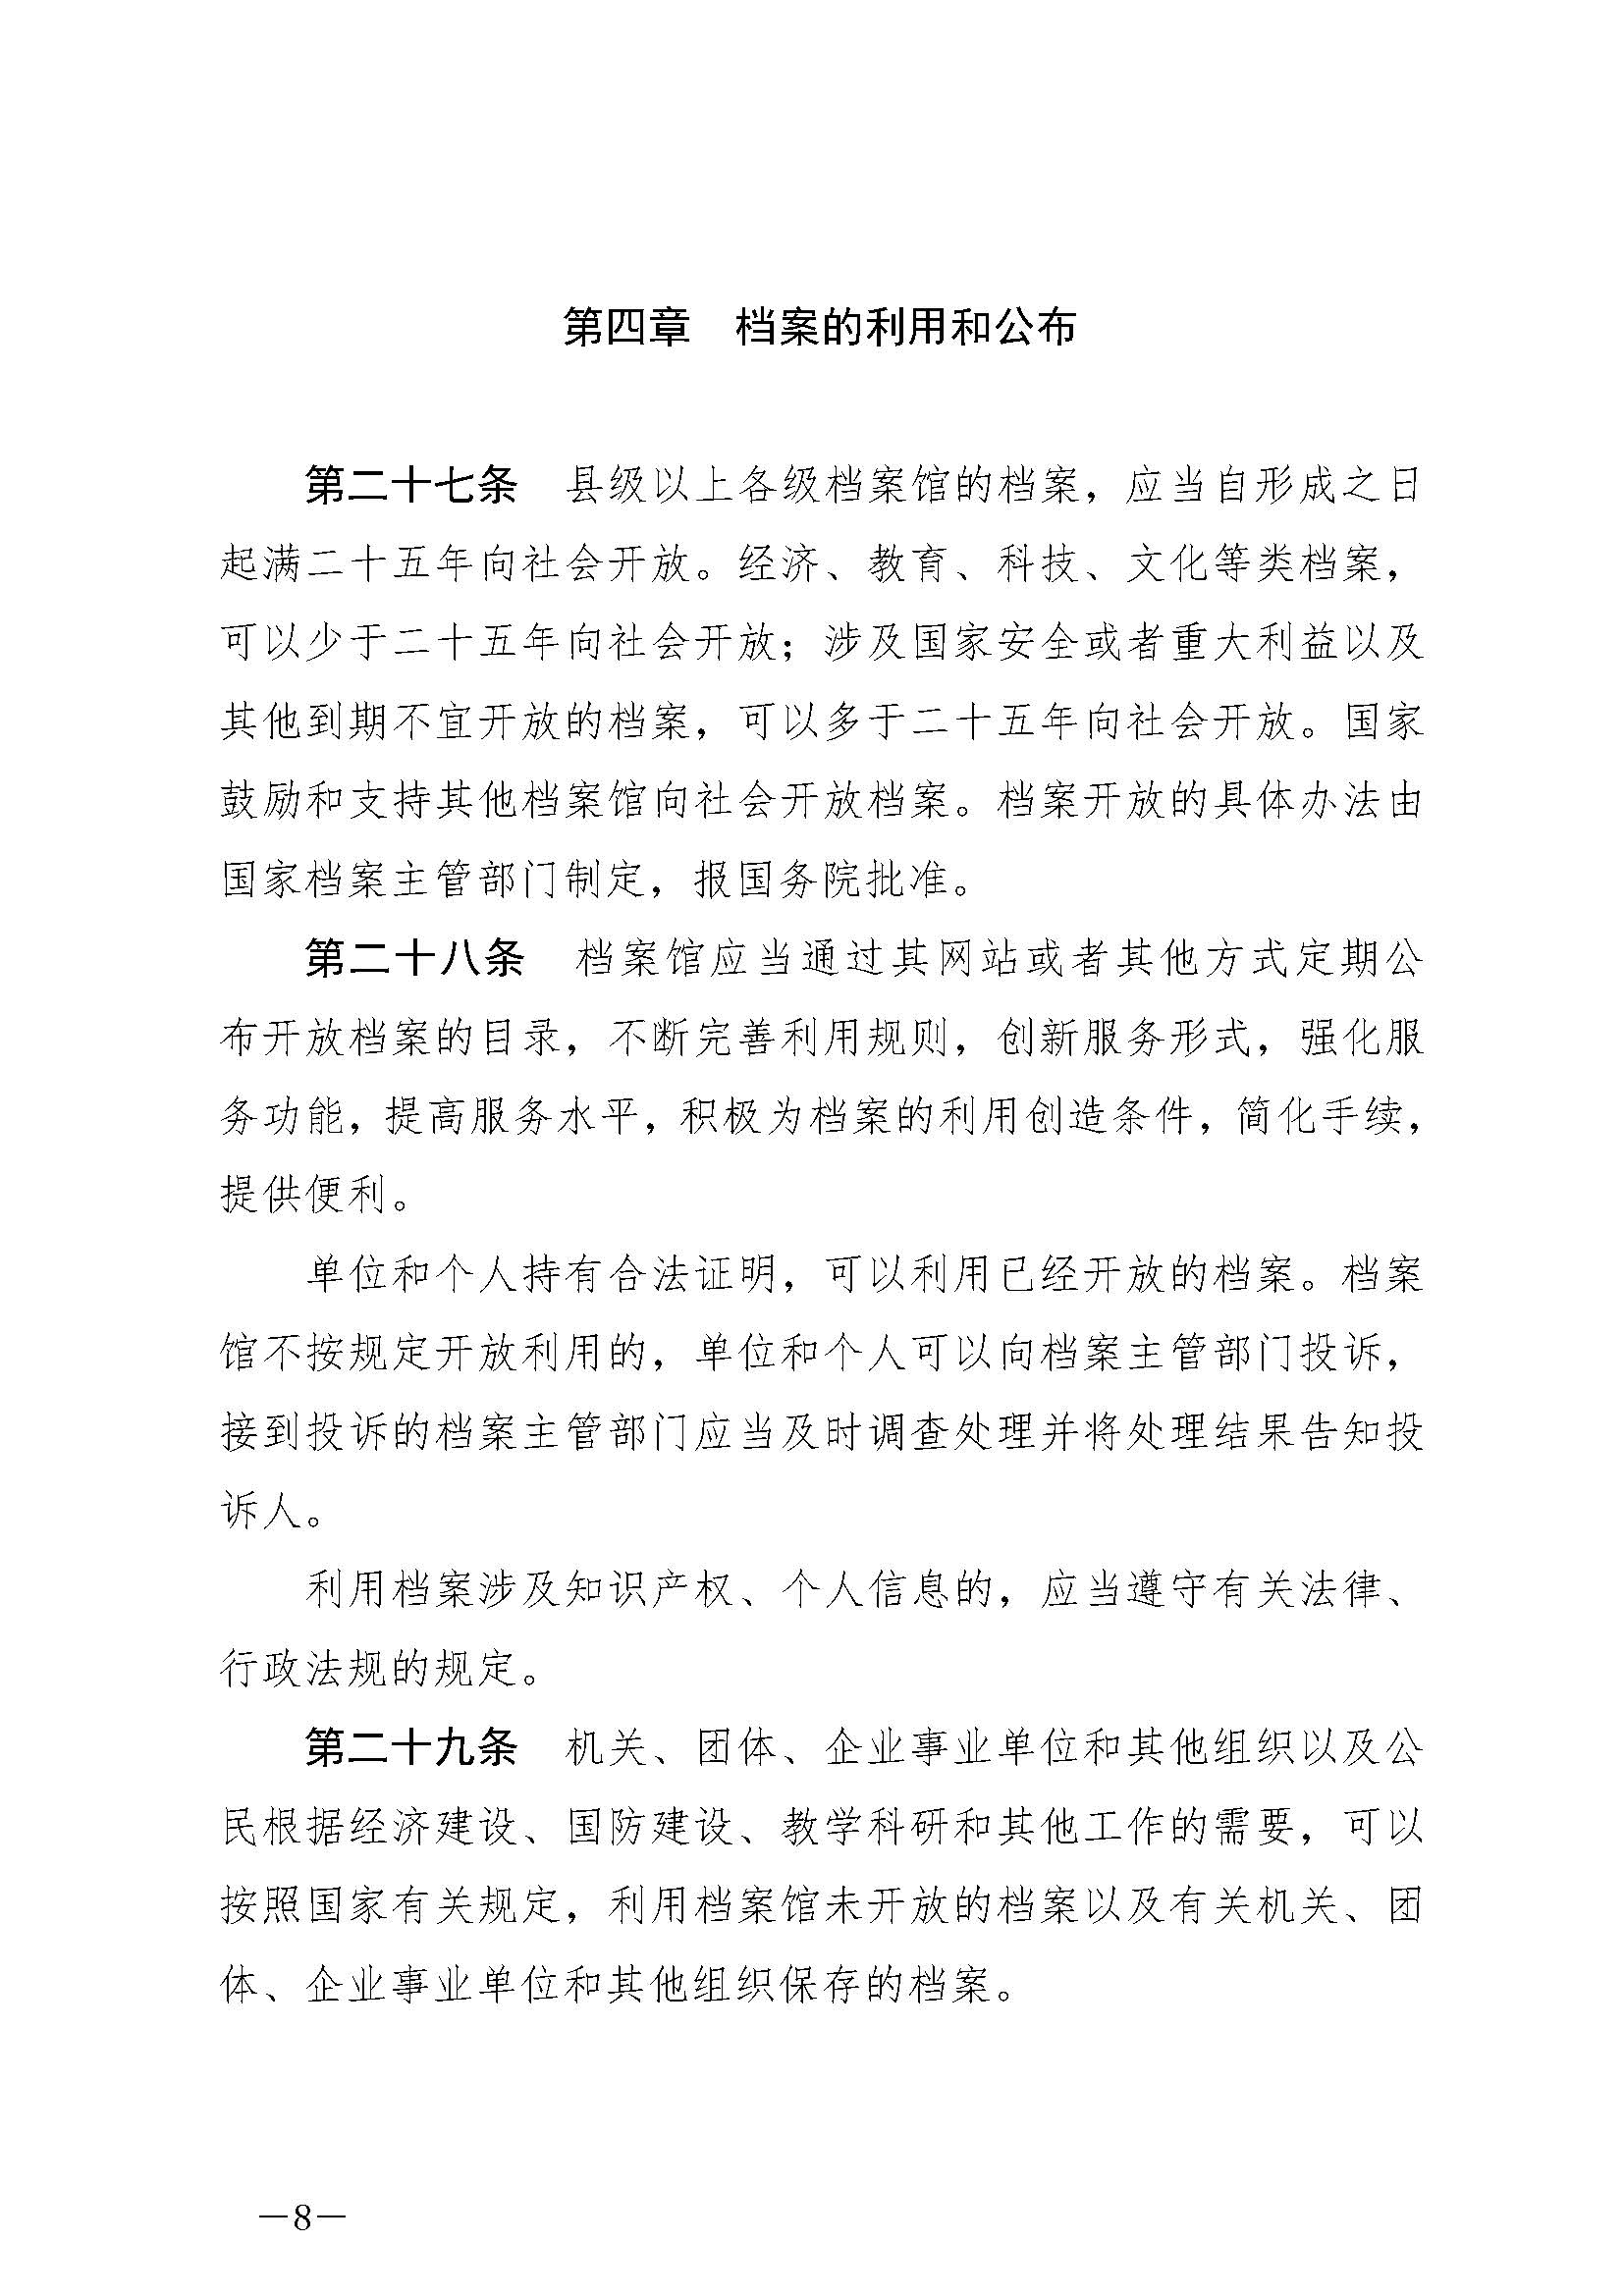 《中华人民共和国档案法》_页面_08.jpg